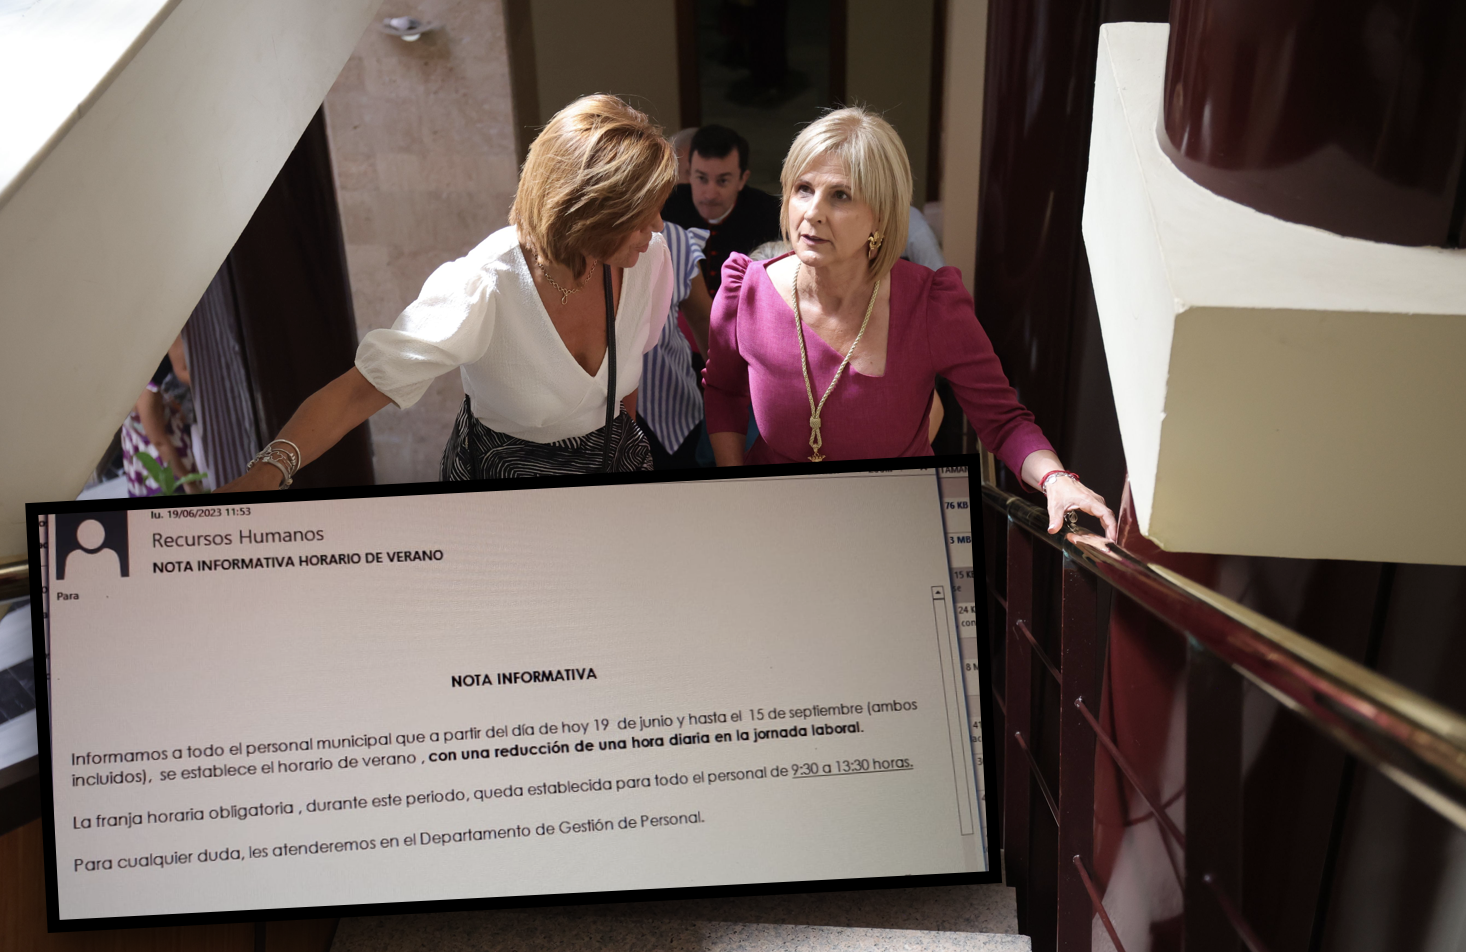 La alcaldesa sube a Alcaldía, el pasado sábado tras ser investida. Sobre la imagen, el comunicado de Recursos a la plantilla.